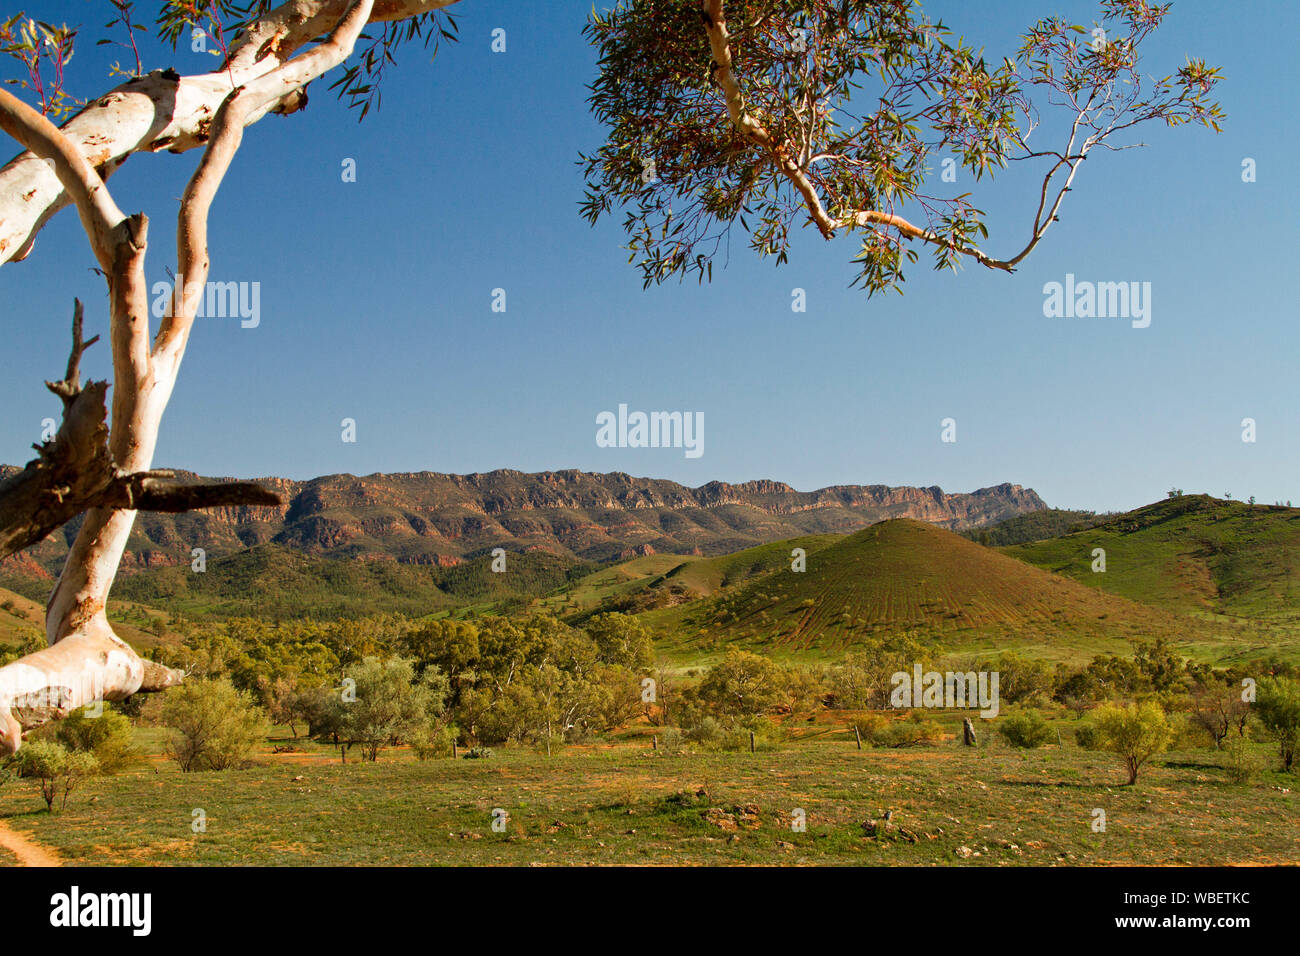 Weite Landschaft der Flinders Ranges National Park mit robusten Rot Rocky reicht über die sanften grünen Hügeln unter blauem Himmel, South Australia Stockfoto